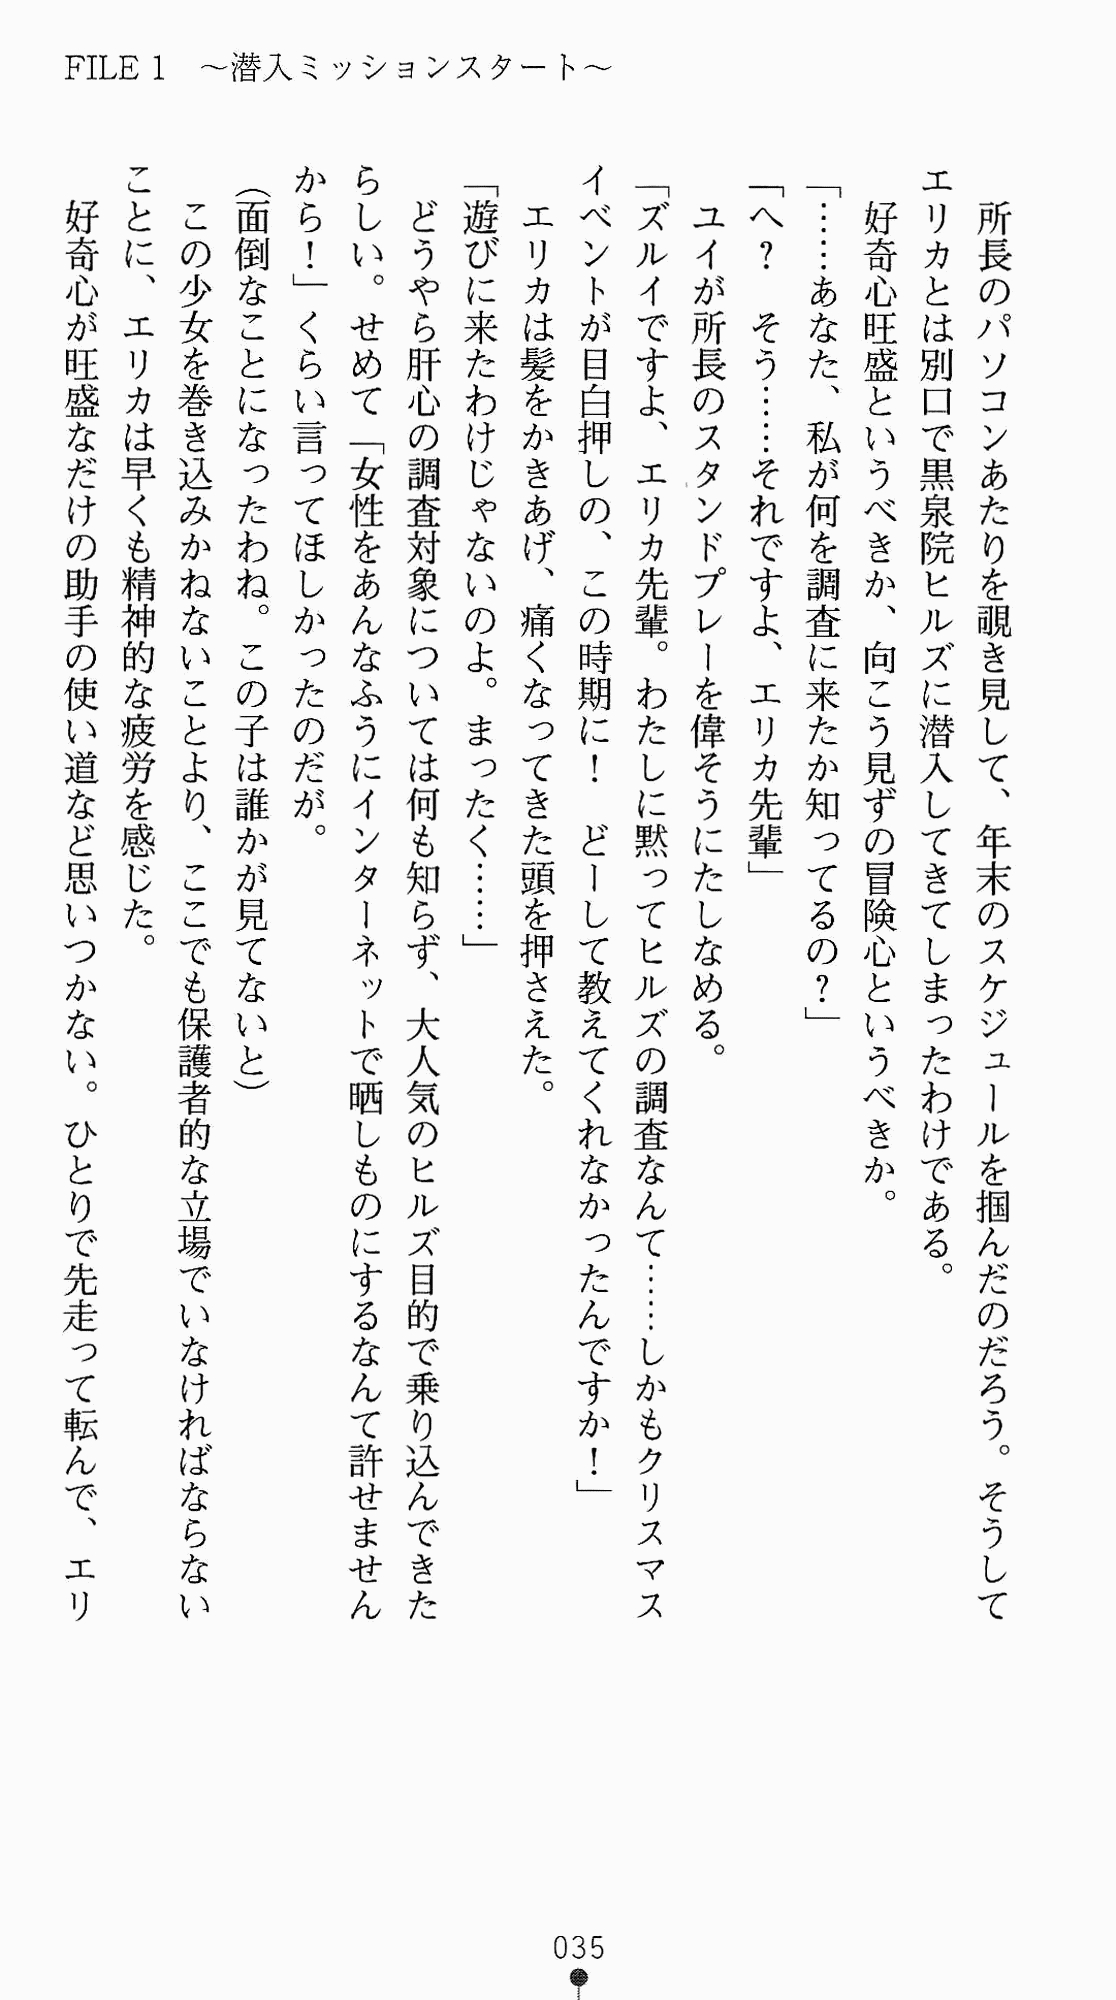 [Kagura Youko, Takahama Tarou] Shiritsu Tantei Takasuga Erika no Jikenbo 2 - Chijouha AV Satsuei 24-ji 50